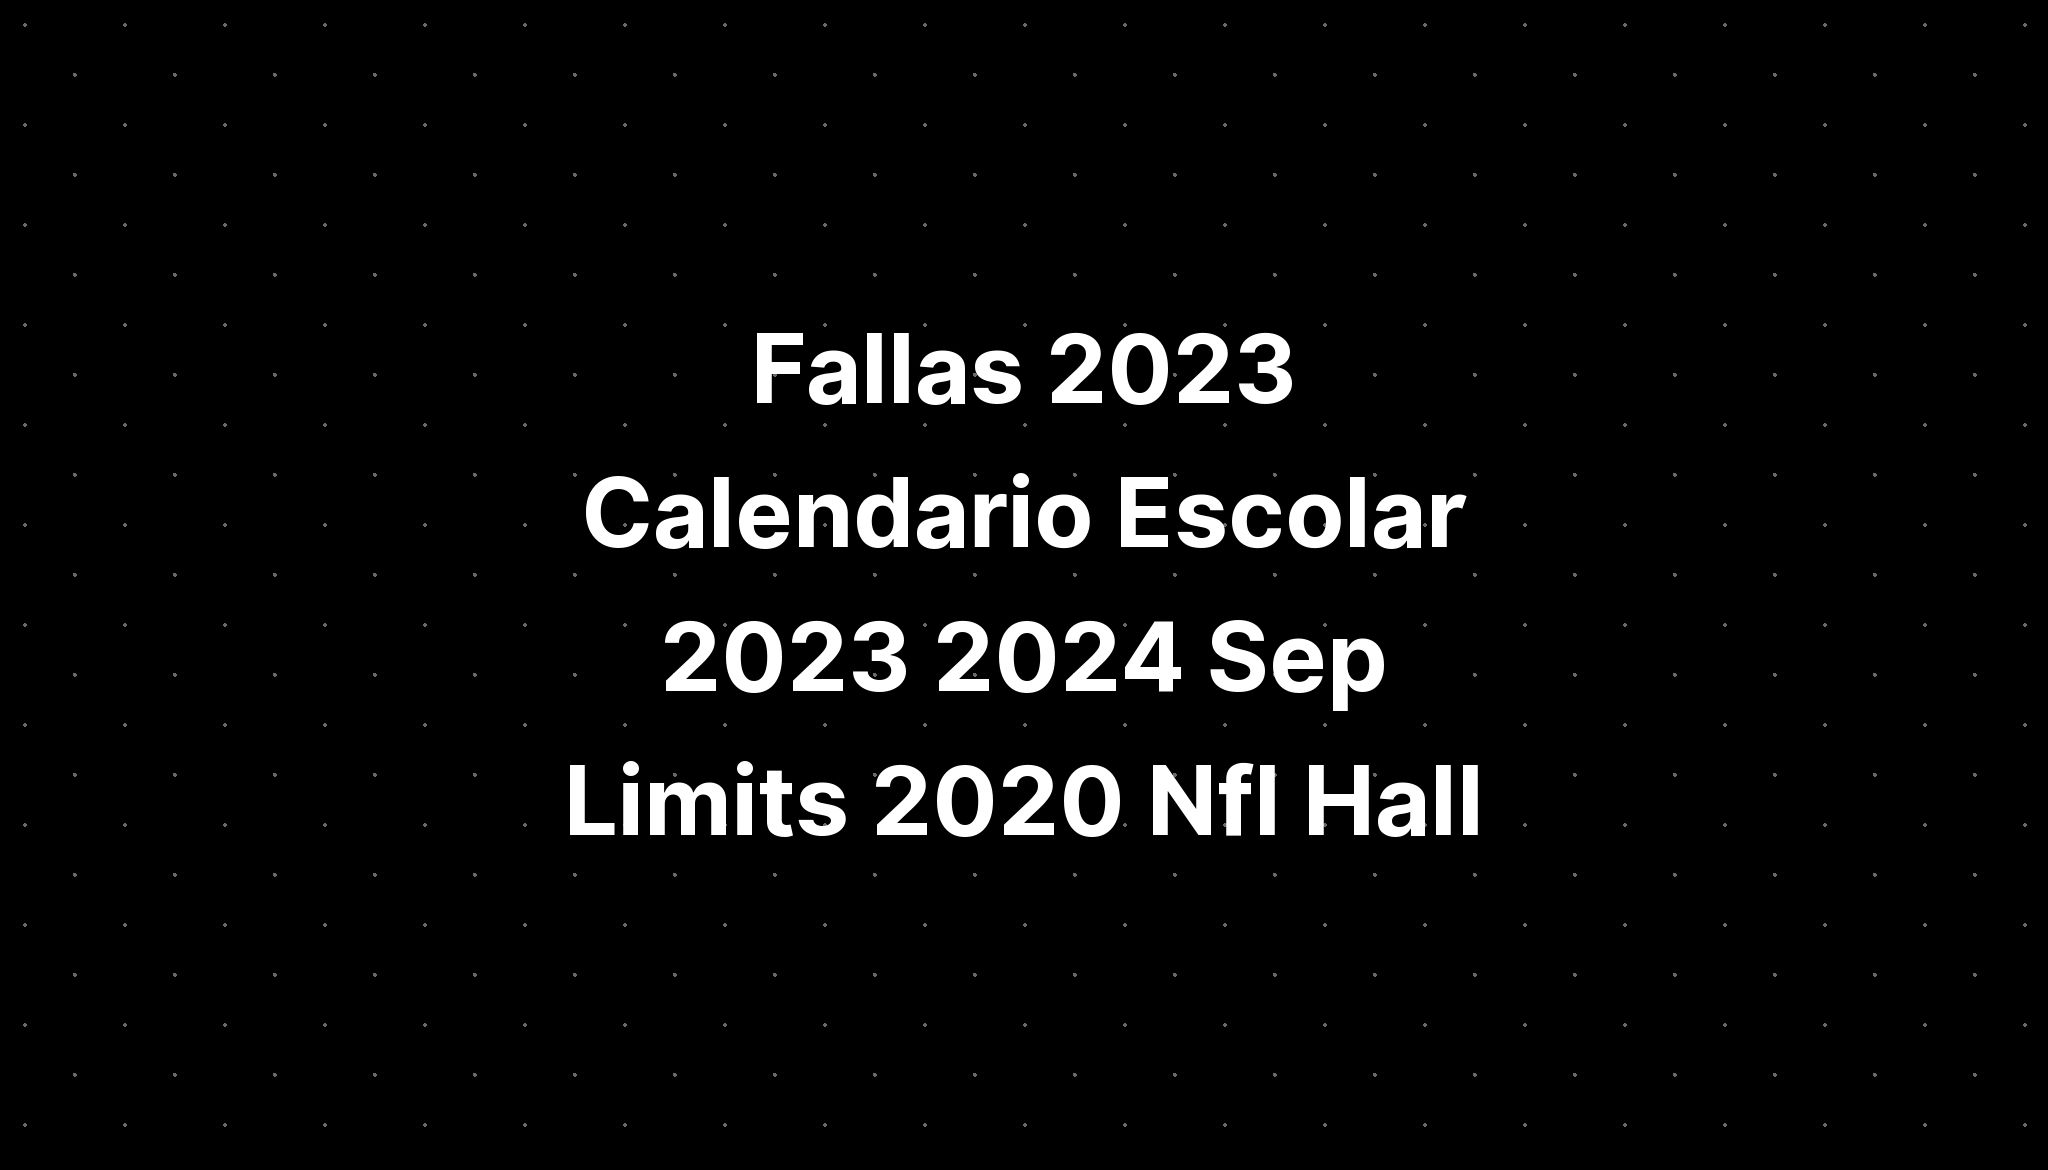 Fallas 2023 Calendario Escolar 2023 2024 Sep Limits 2020 Imagesee